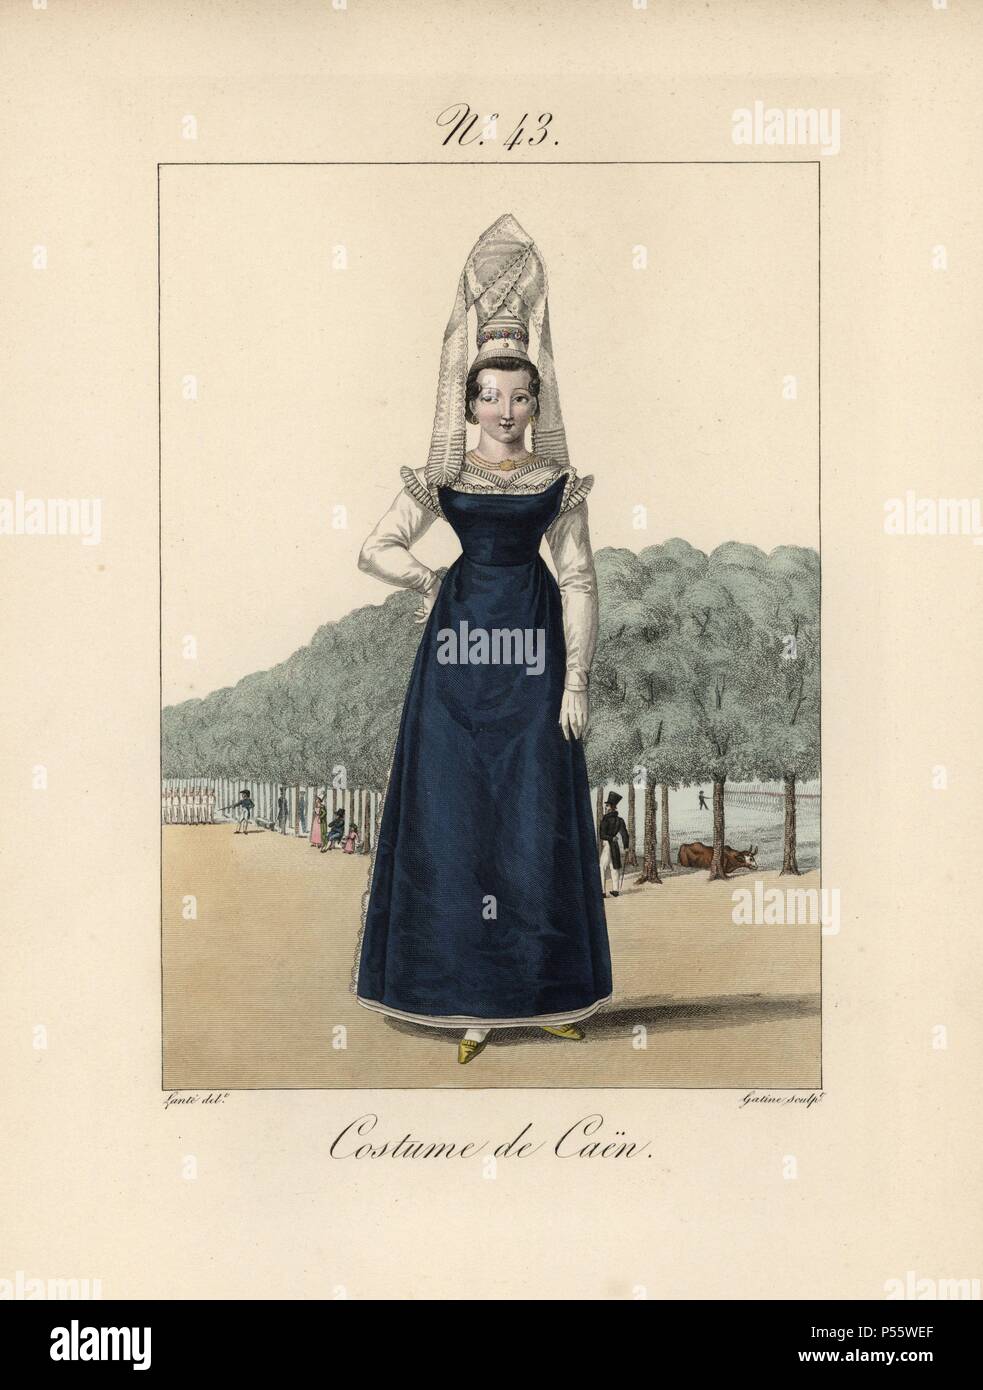 Kostüm von Caen. Die Motorhaube ist von großer Höhe, mit den Schleier über der Krone von künstlichen Blumen bis zu einem Punkt, wie ein Hut verdreht. Handcolorierte mode Platte Illustration von LANTE von Gatine von louis-marie's Lante' Kostüme des Gravierten femmes du Pays de Caux", 1827/1885. Mit ihren hohen Elsässischen spitze Hüte, die Frauen von Caux und der Normandie waren berühmt für die Eleganz und Stil. Stockfoto